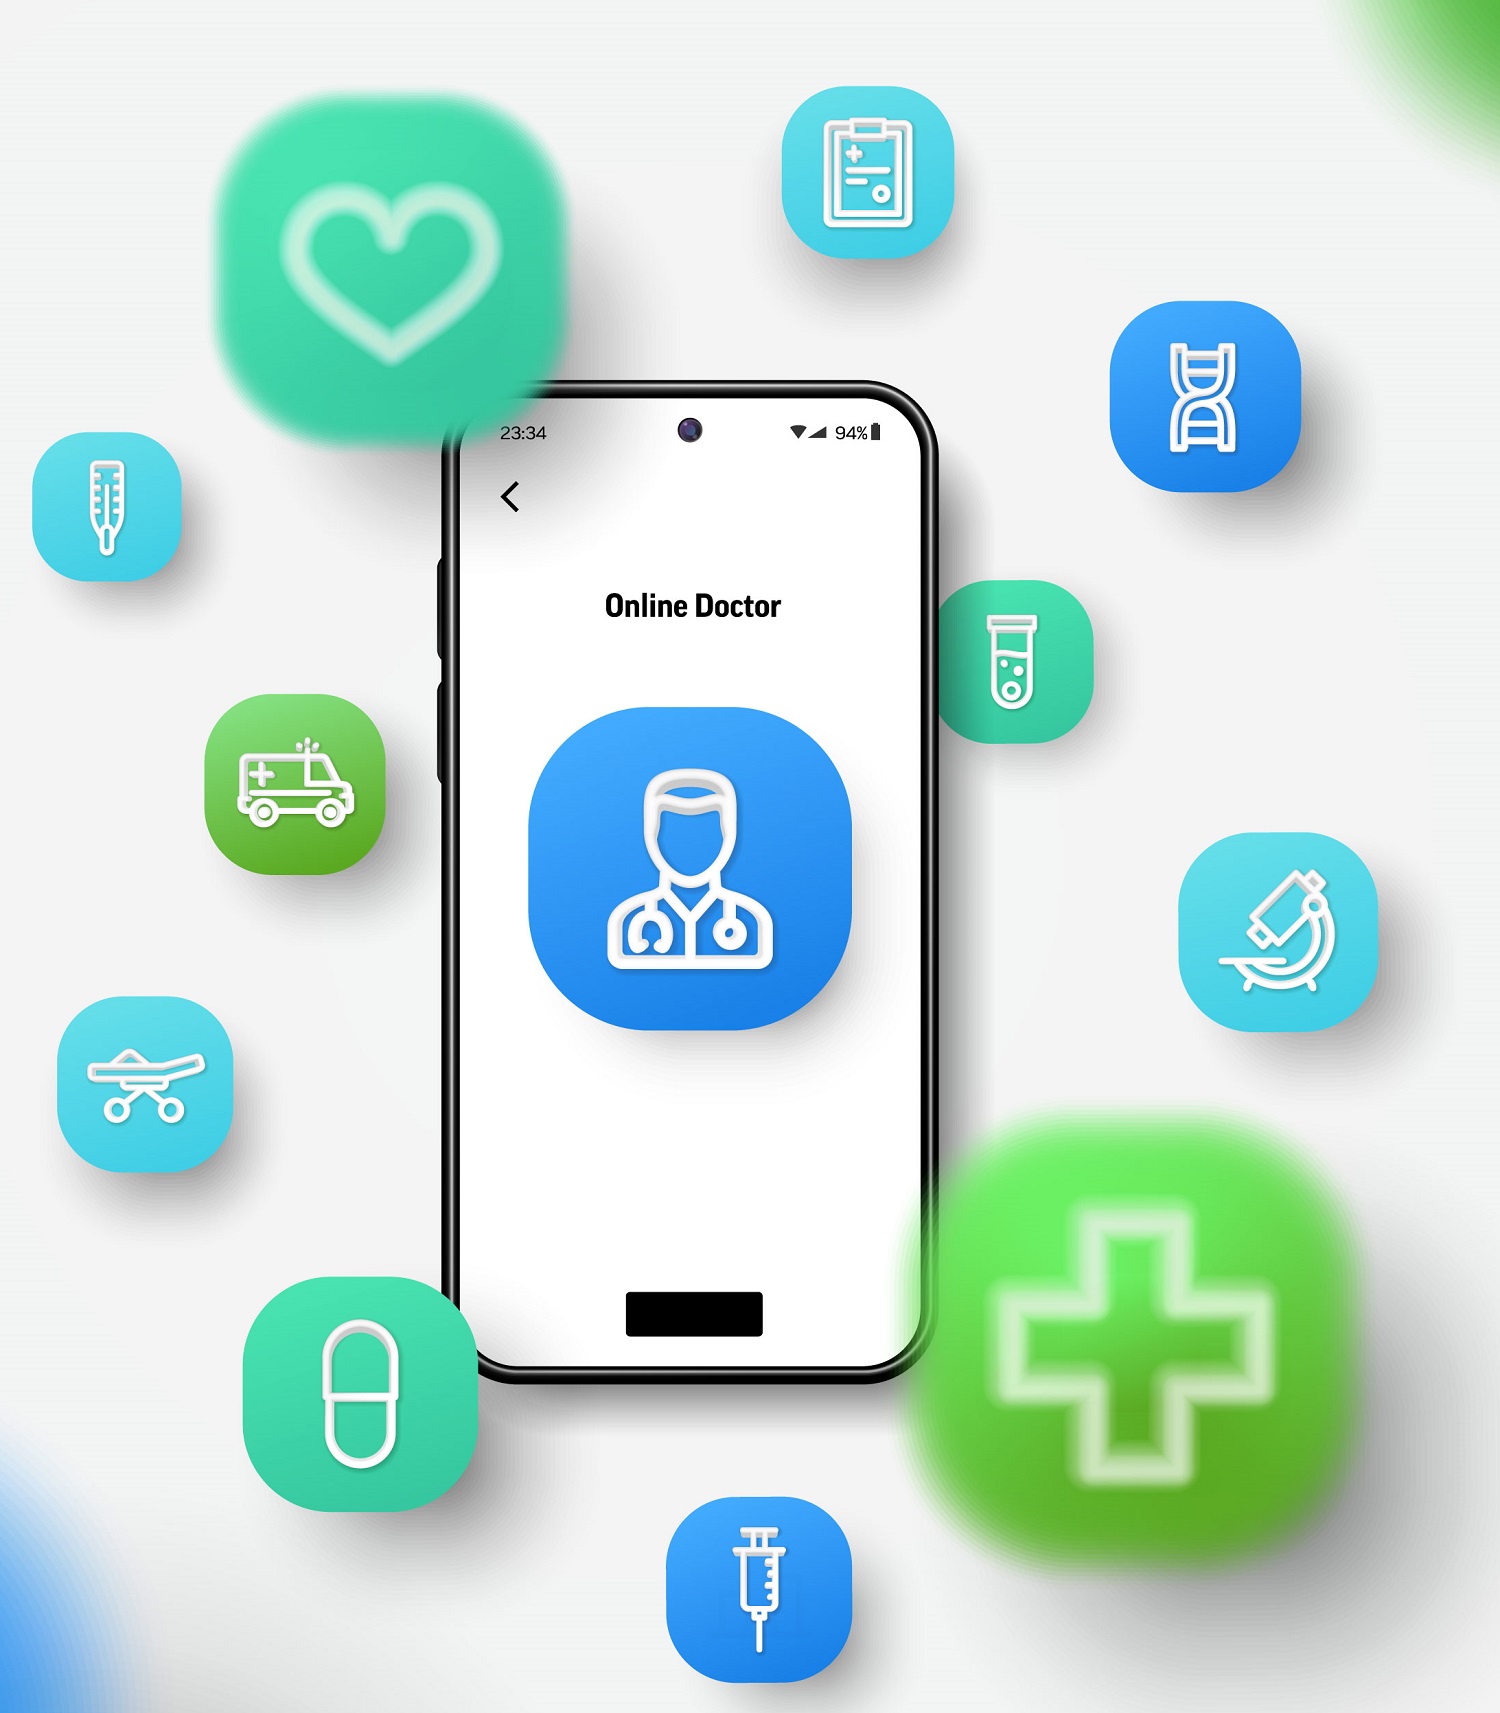 Mobile Medical Apps Market